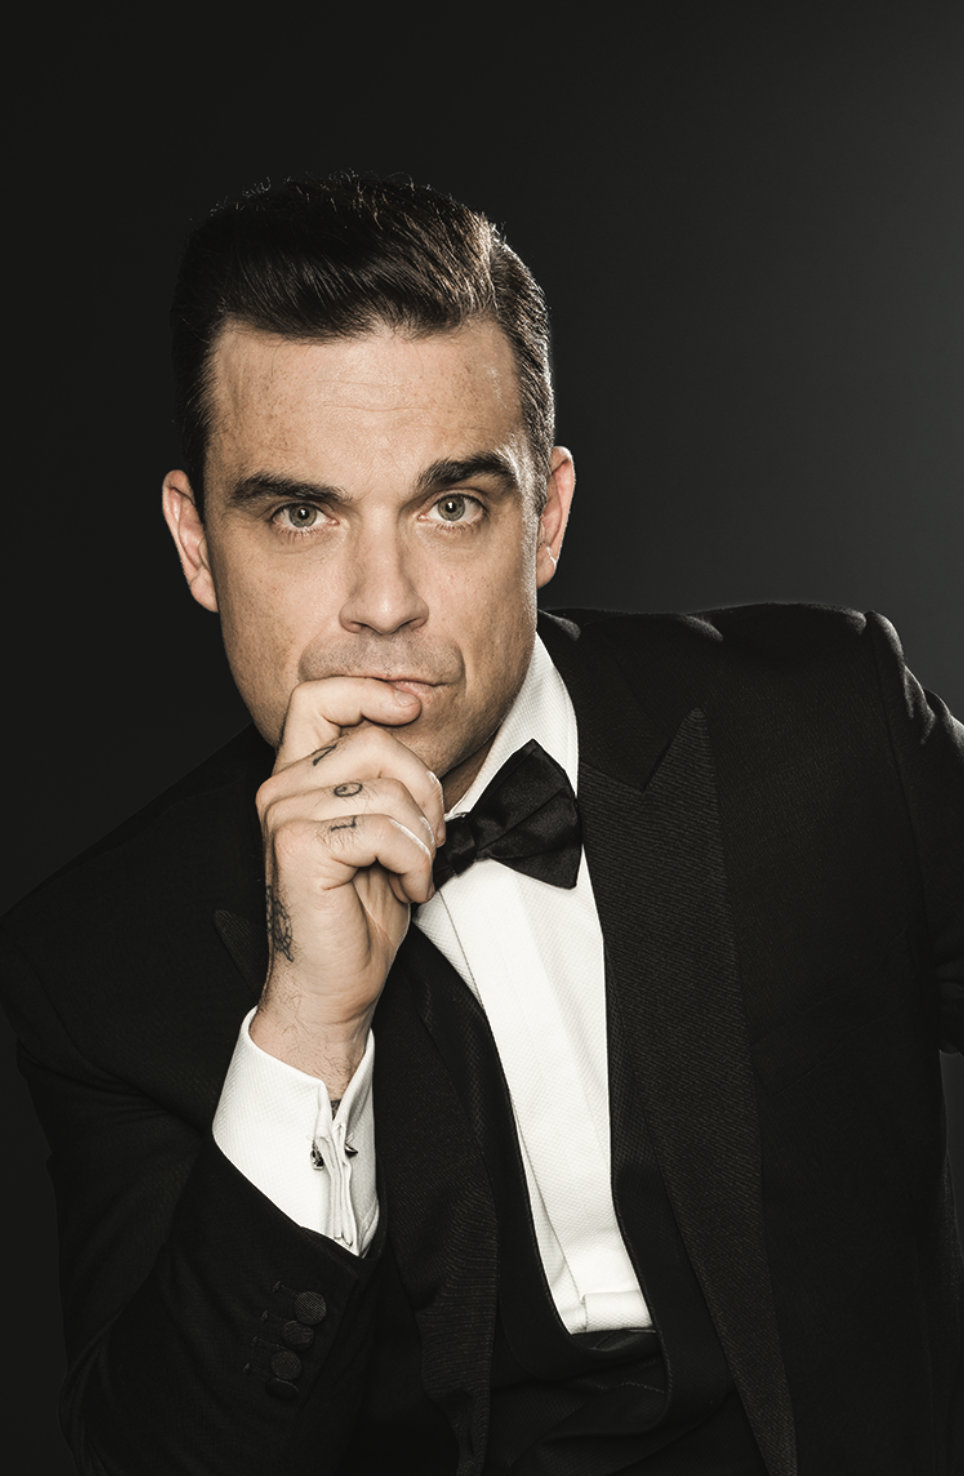 Голос мужского певца. Робби. Robbie Williams. Английский певец Робби Уильямс. Робби Уильямс певец фото.